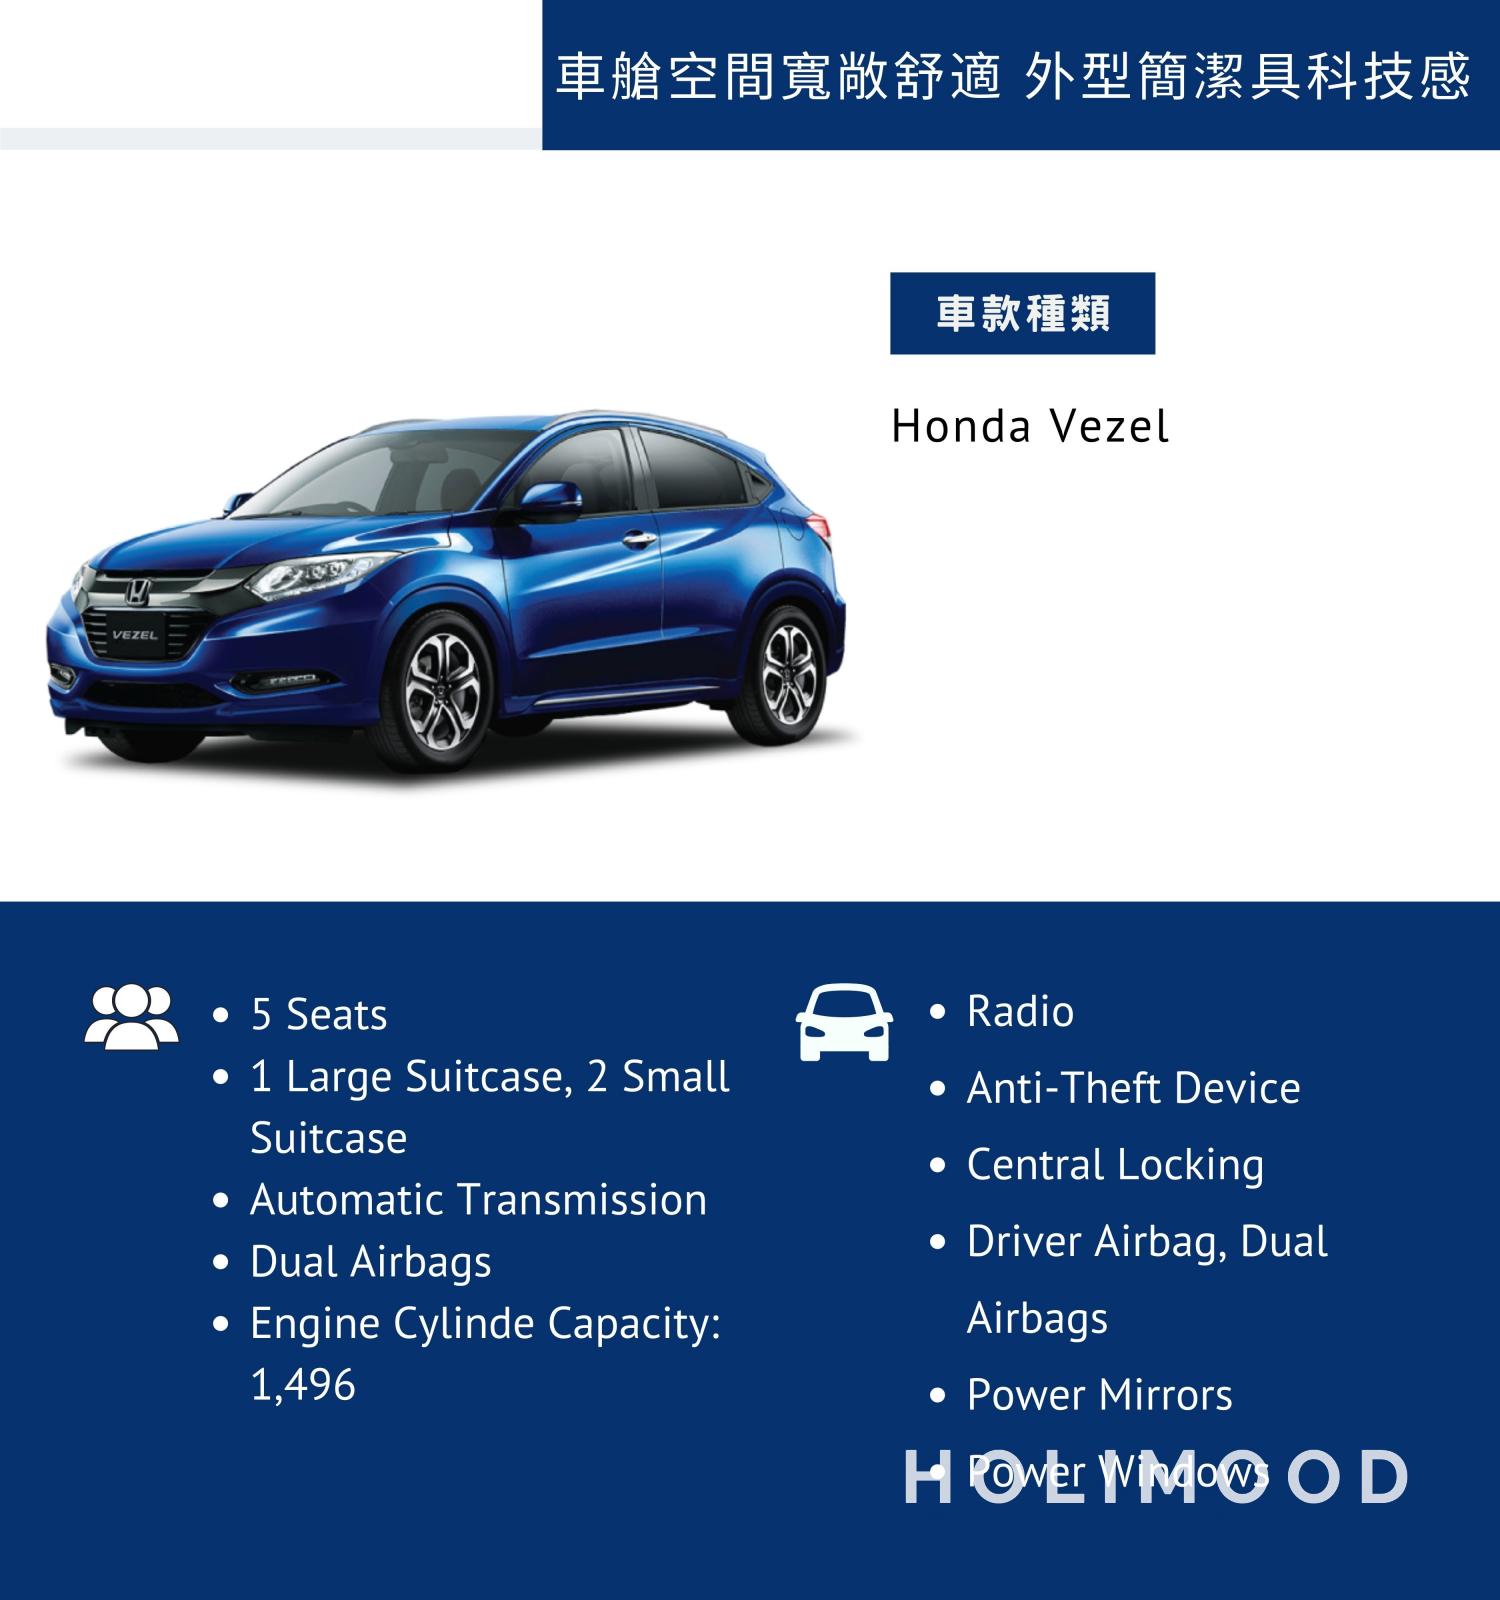 DCH Mobility Car Rent x Holimood Promotion 【安全性能高】【五年內新車】Honda Vezel - 靈活慳油5人車 (月租) 2